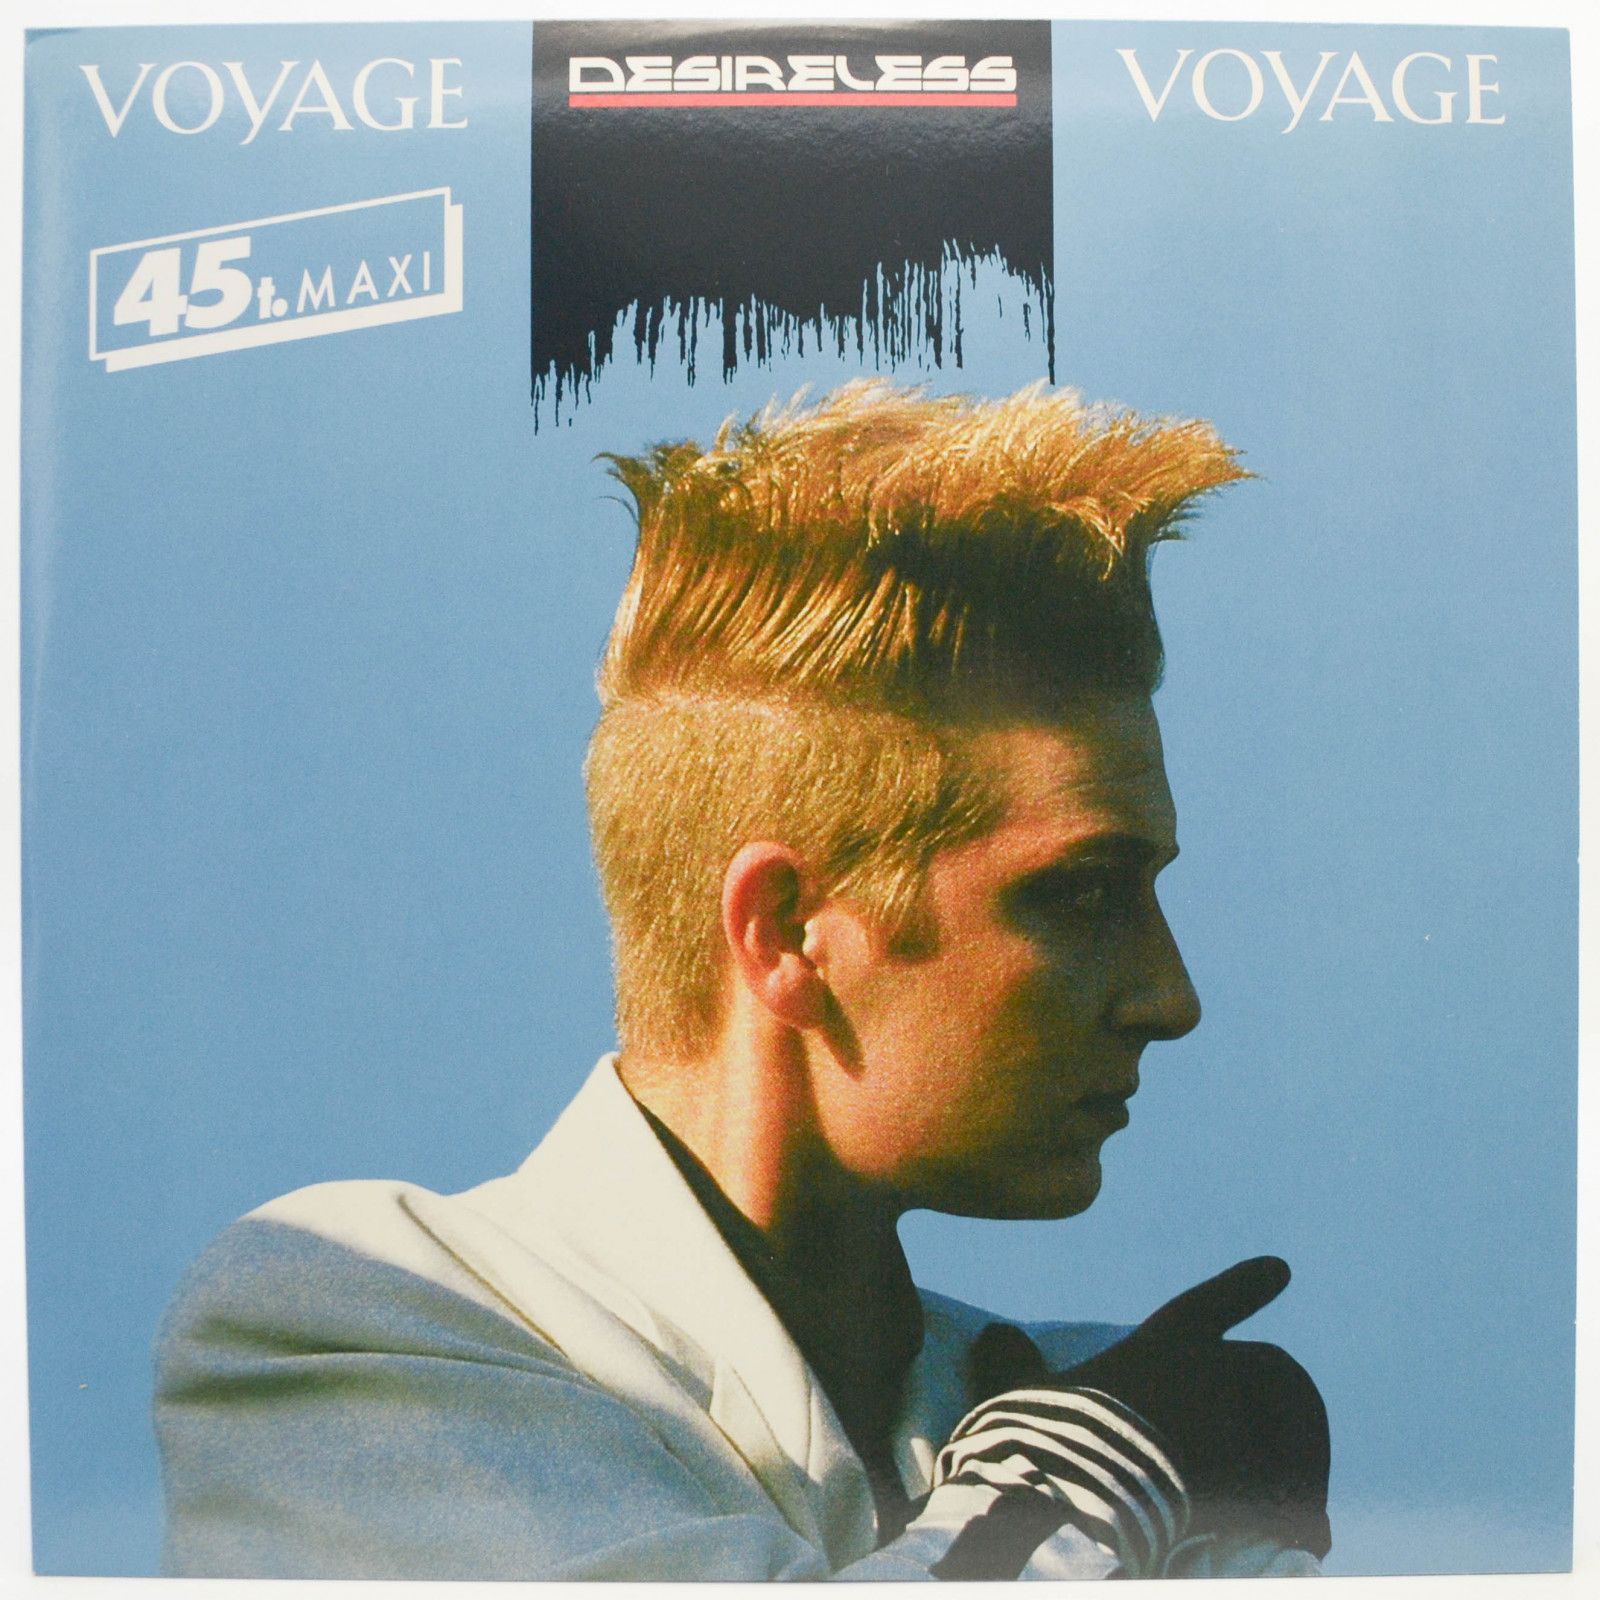 Desireless — Voyage Voyage, 1986